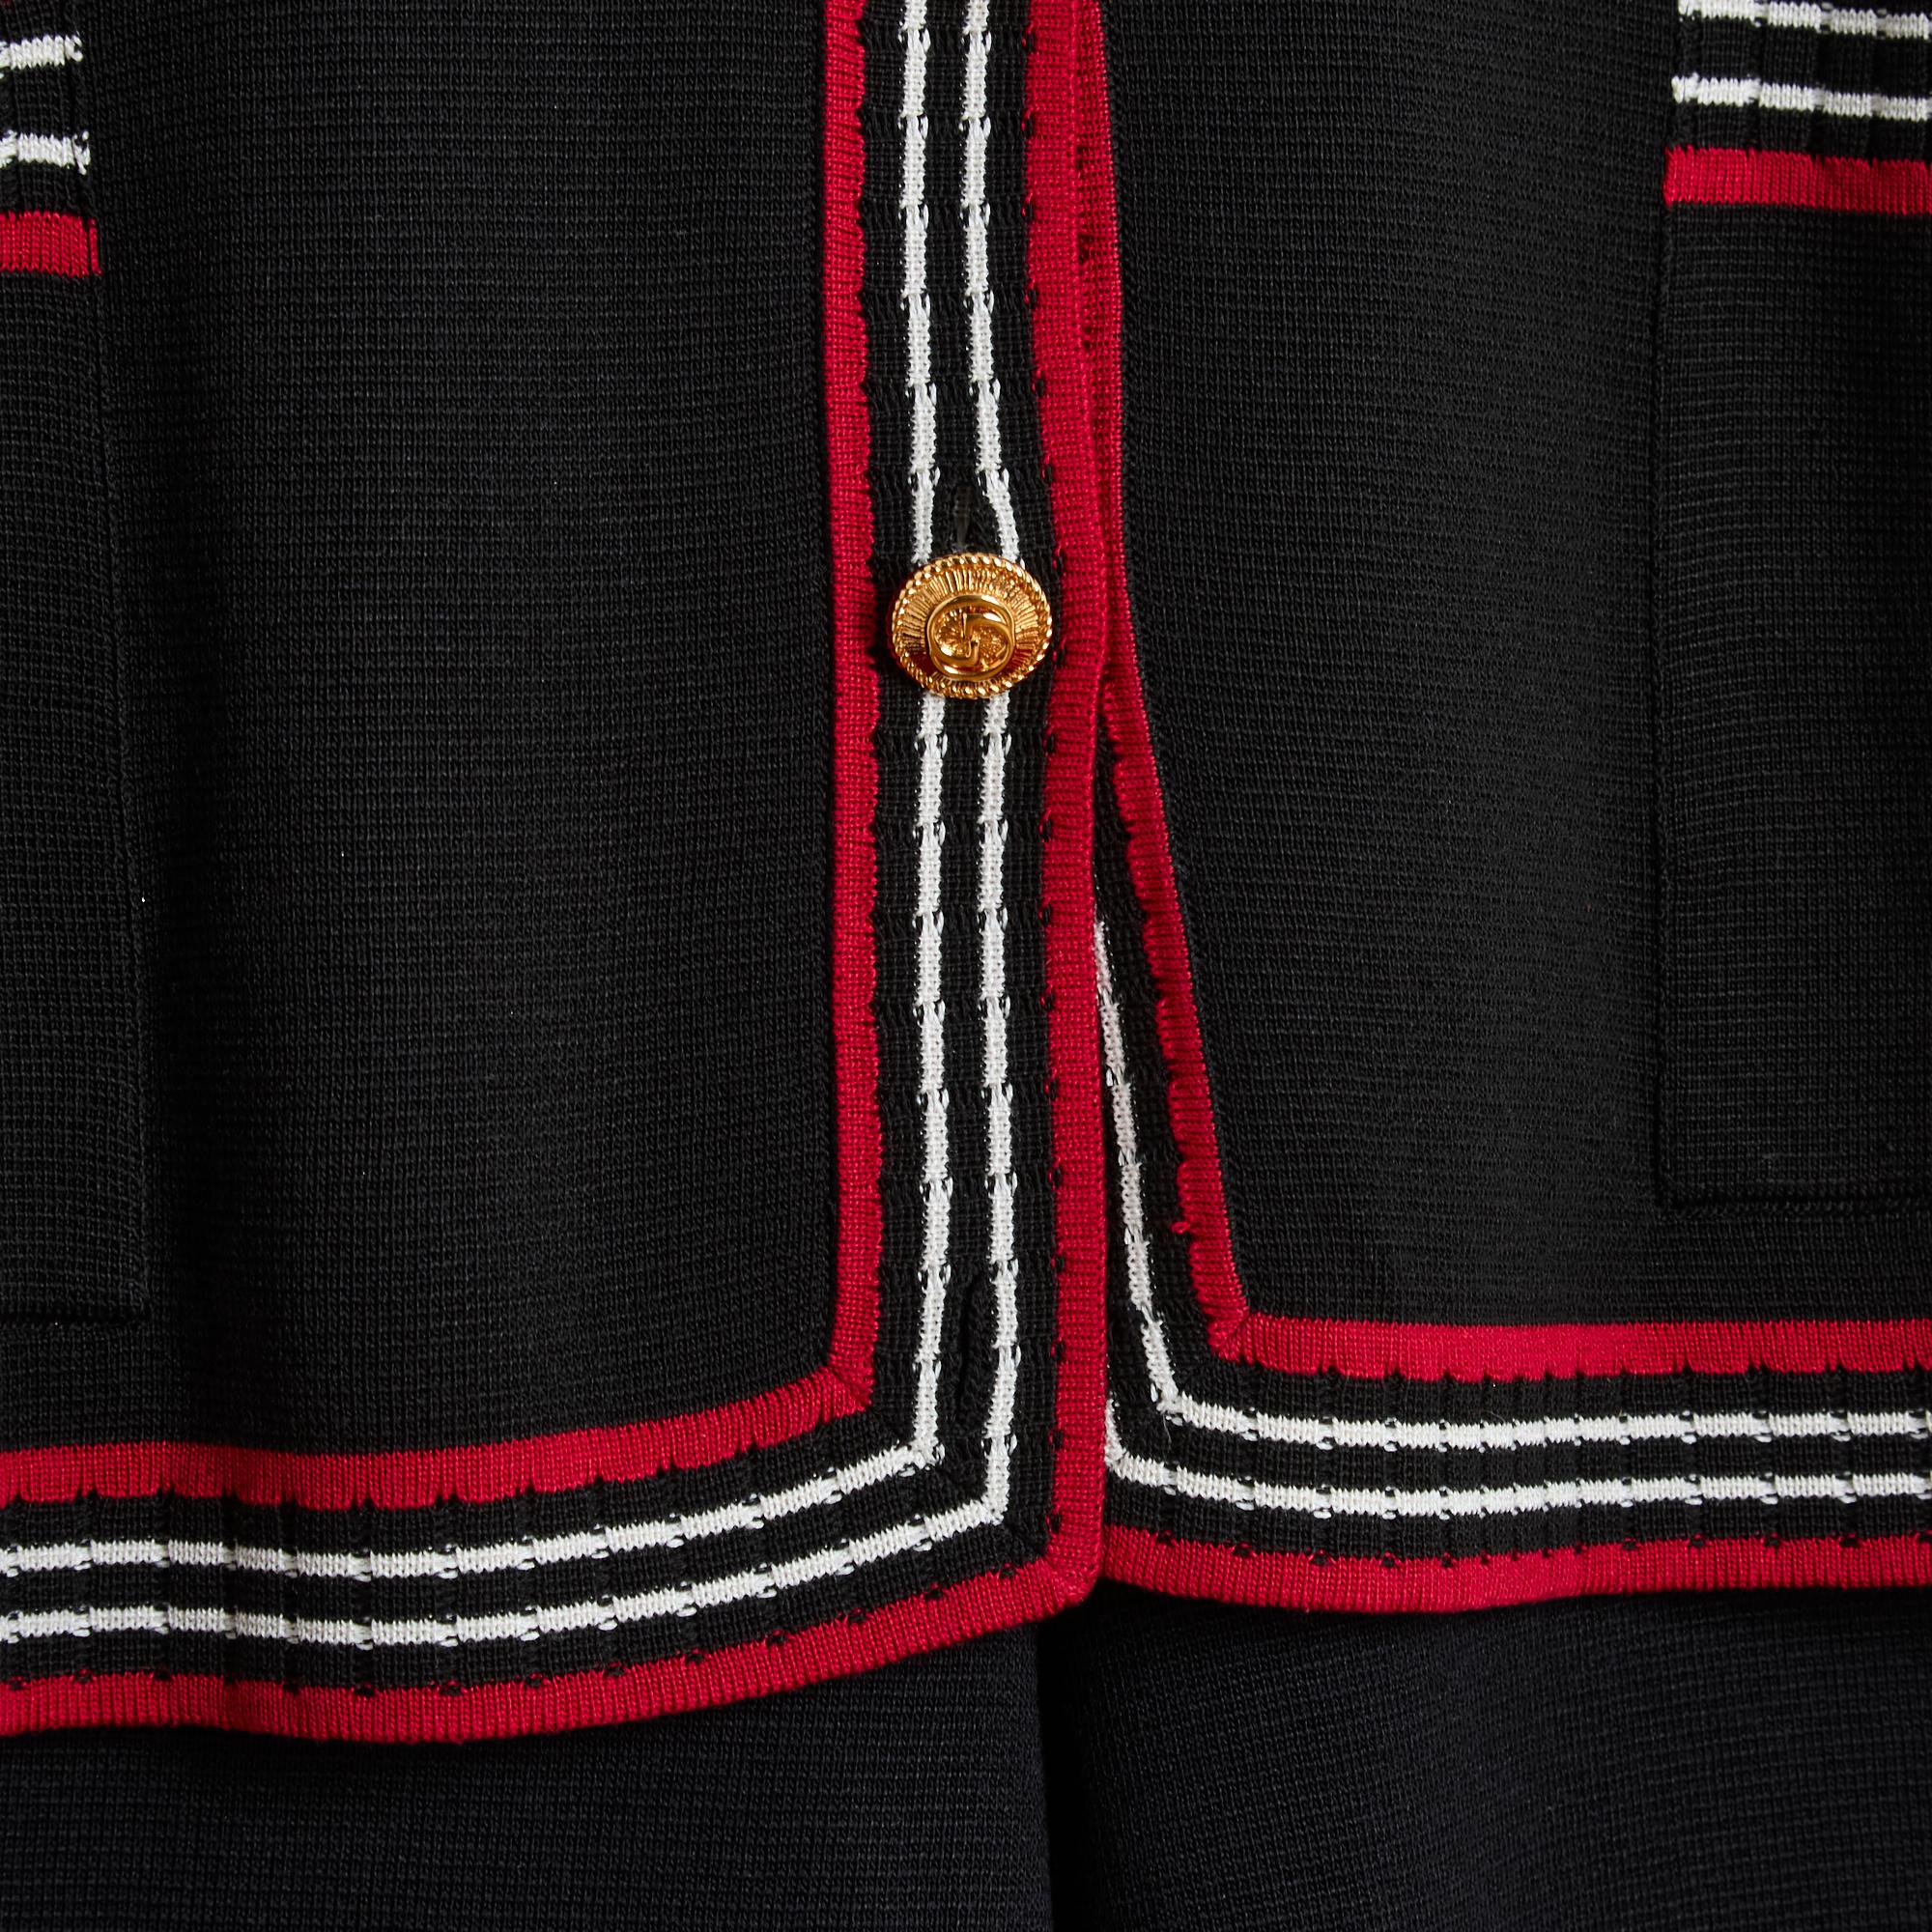 Gucci Pre Fall 2019 Kollektion von Alessandro Michele aus Seidenstrick (28%) und schwarzer Baumwolle mit kontrastierender rot-schwarz-weißer Einfassung, bestehend aus einer übergroßen, voluminösen Strickjacke, gekerbtem Kragen, der mit 4 goldenen